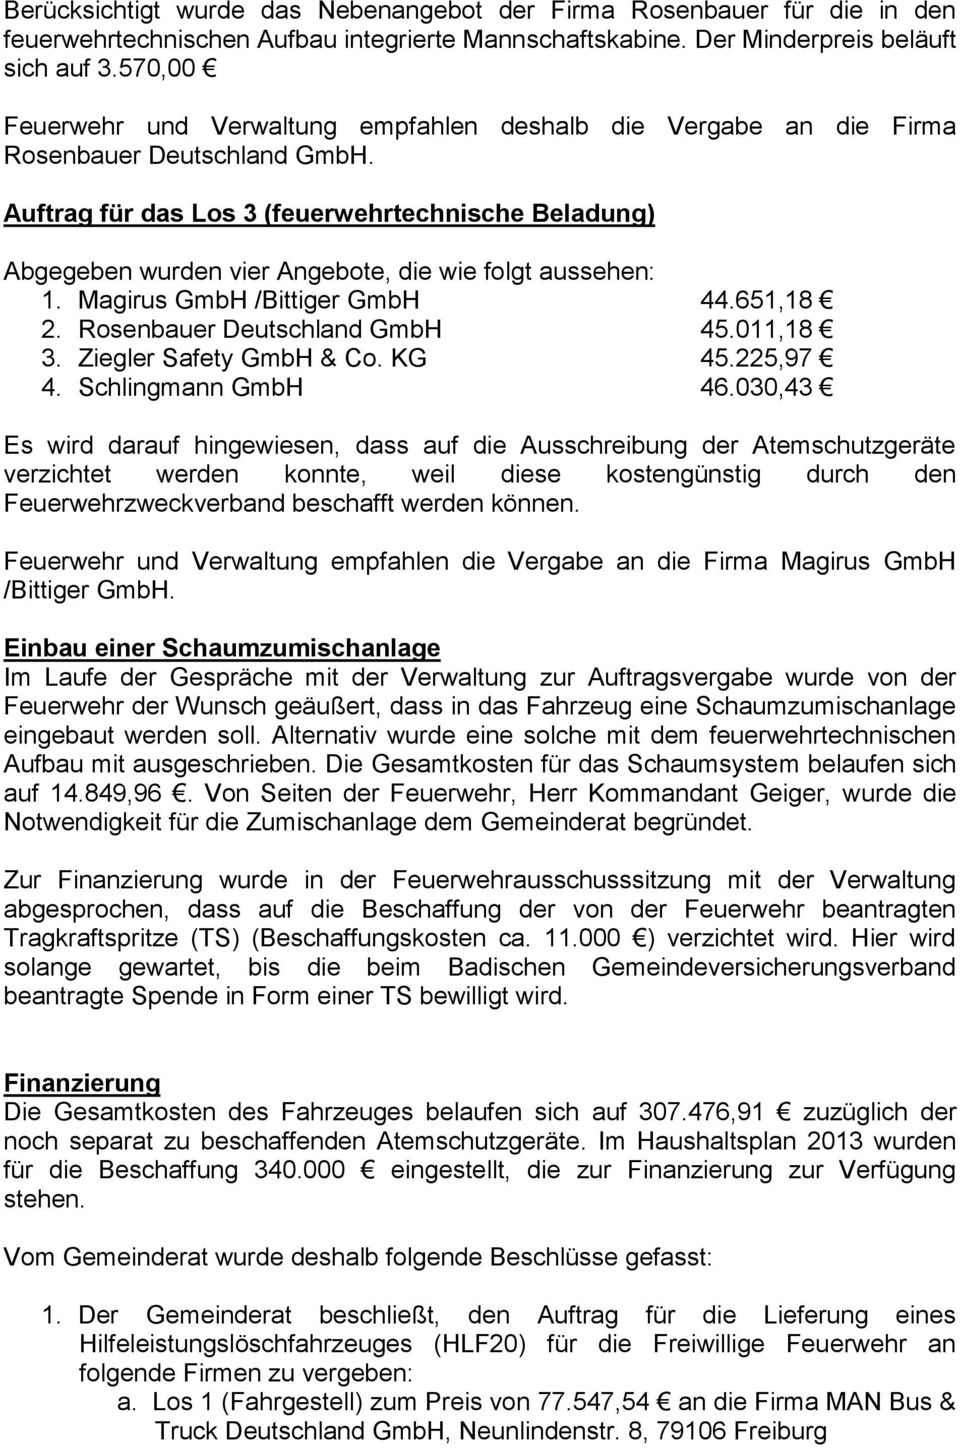 Auftrag für das Los 3 (feuerwehrtechnische Beladung) Abgegeben wurden vier Angebote, die wie folgt aussehen: 1. Magirus GmbH /Bittiger GmbH 44.651,18 2. Rosenbauer Deutschland GmbH 45.011,18 3.